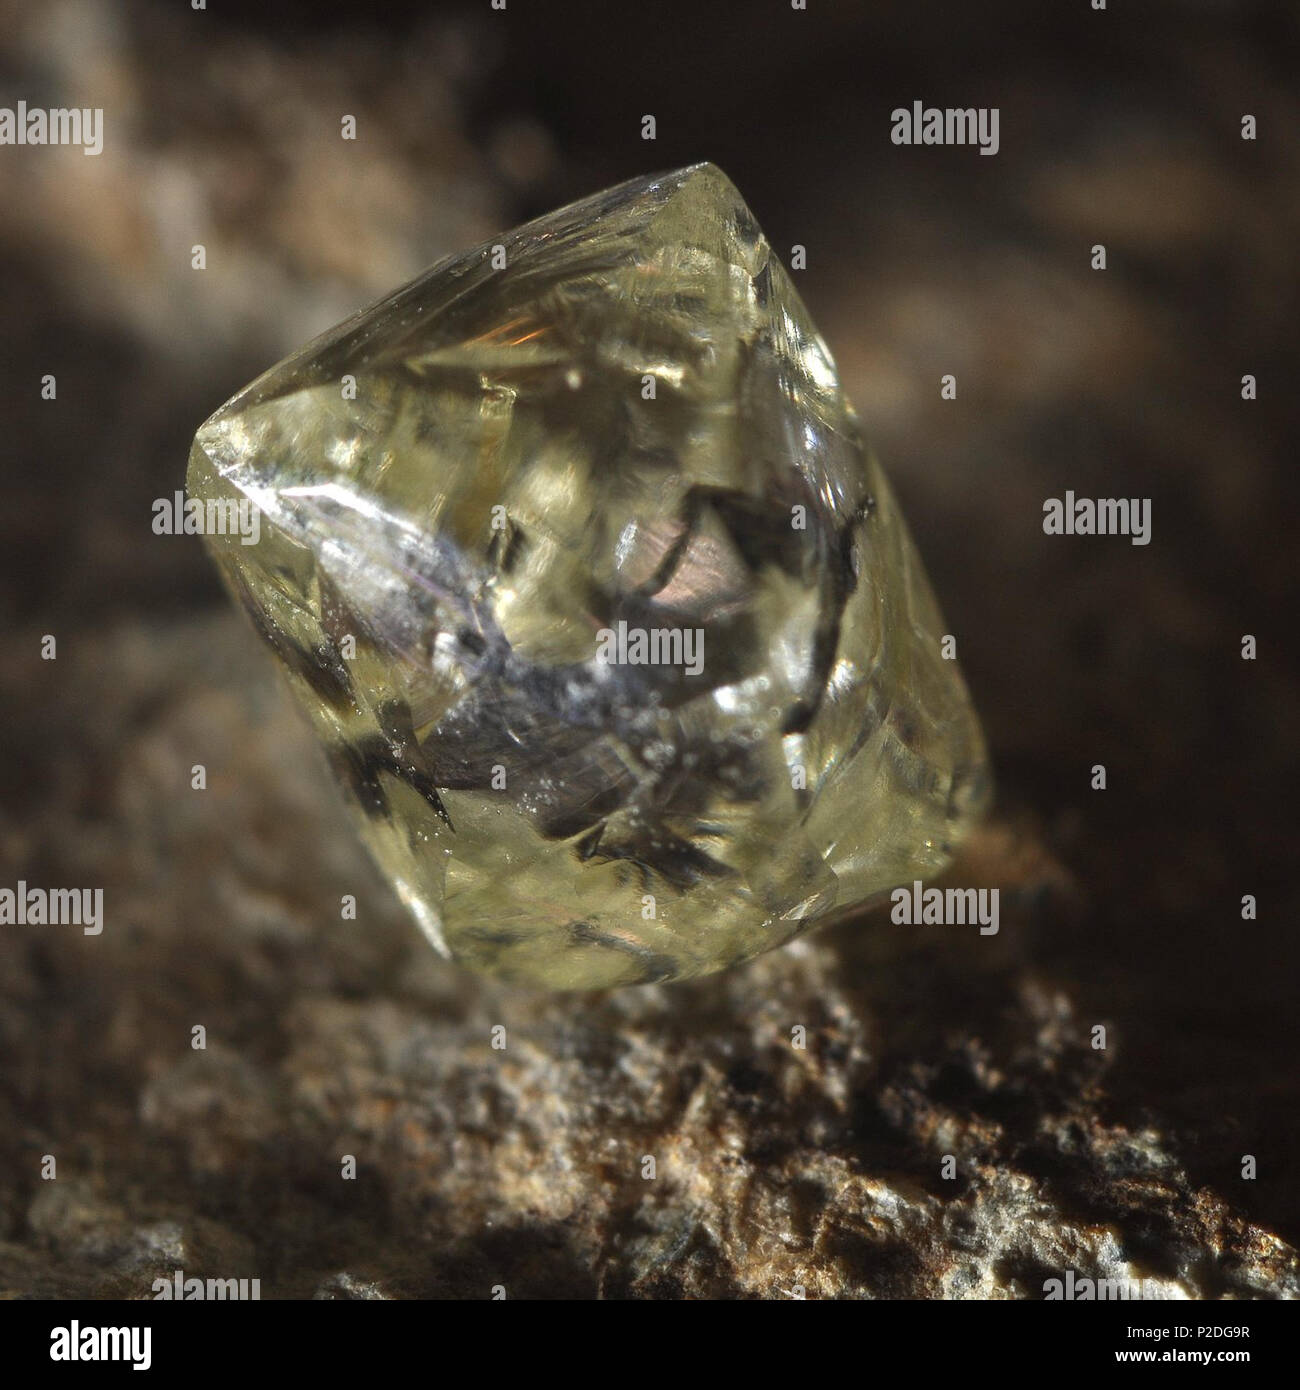 Englisch: Diamant, ein Kubikmeter Co2-Kristall, ist das härteste bekannte  Mineral. 15 September 2013, 14:48:21. Unbekannt 49 Rohdiamant - härteste  Mineral bekannt Stockfotografie - Alamy